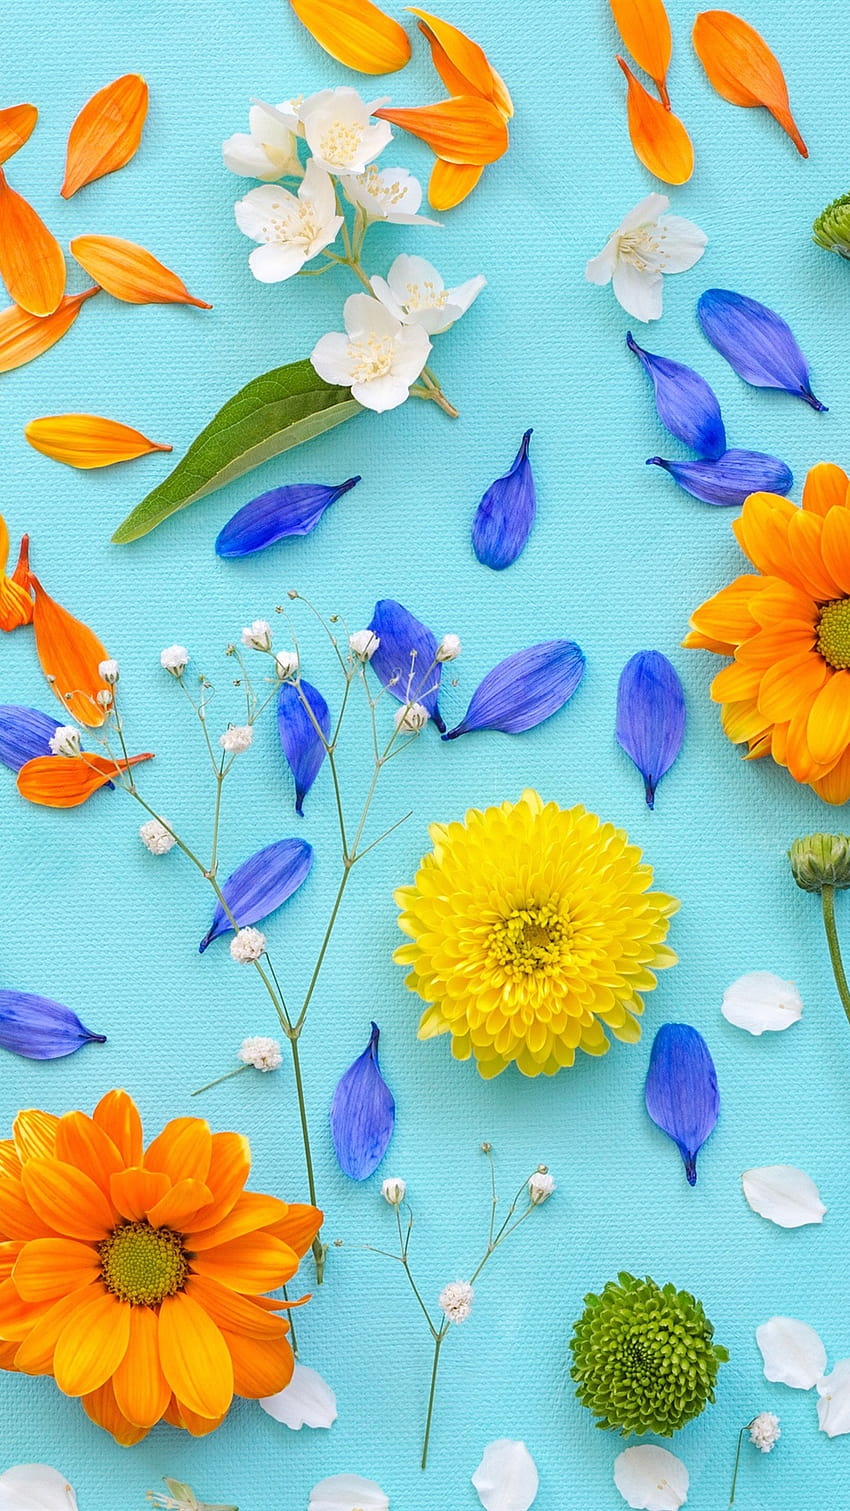 Crisantemo, pétalos, flores amarillas, s azules 1080x1920 iPhone 8/7/6/6S Plus, , flores amarillas iphone fondo de pantalla del teléfono